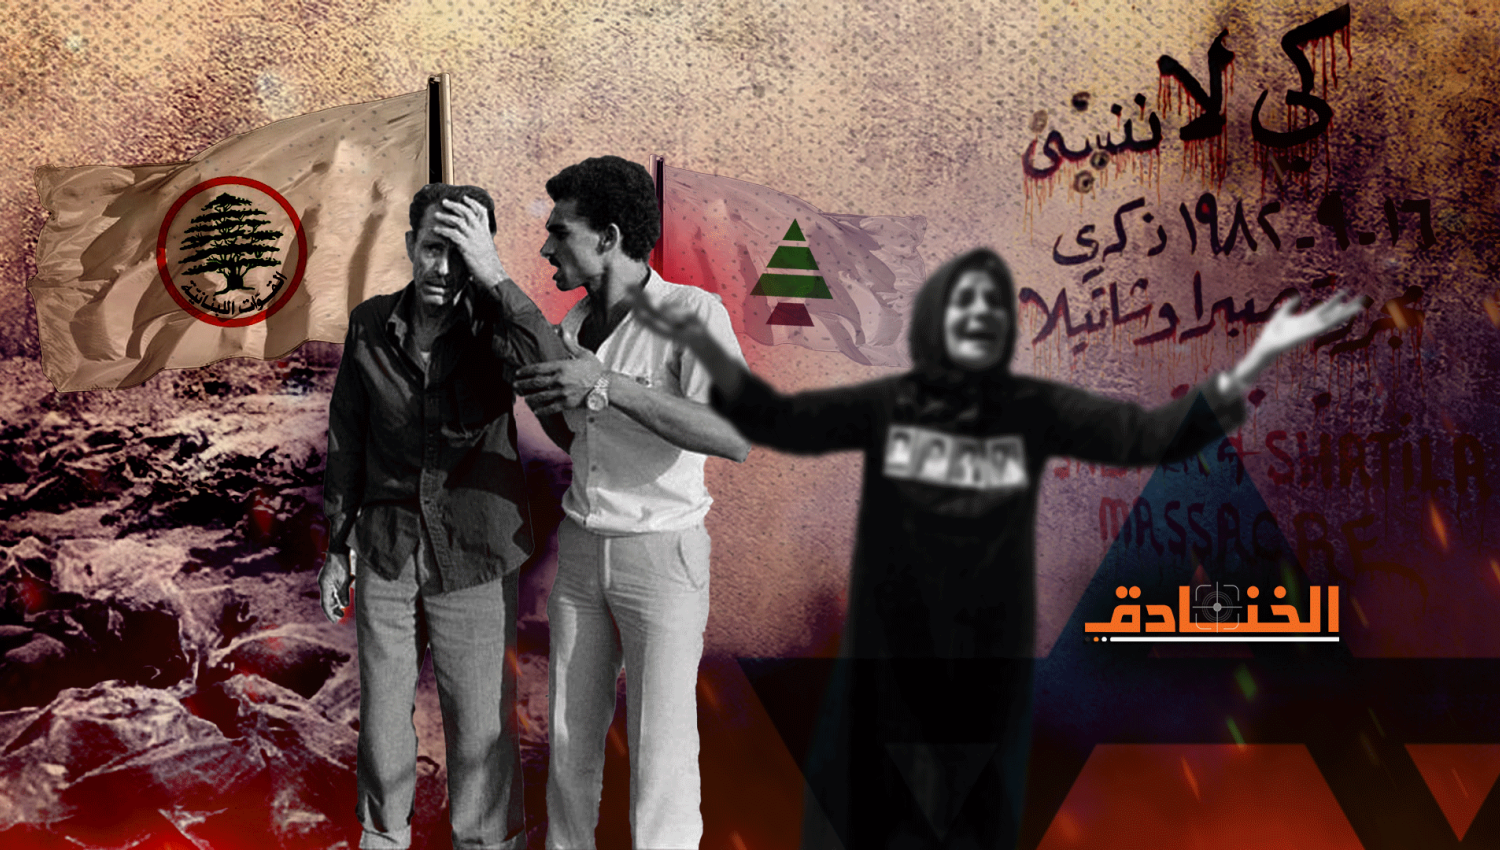 مجزرة صبرا وشاتيلا: الصورة الحقيقية لحزب الكتائب والقوات اللبنانية